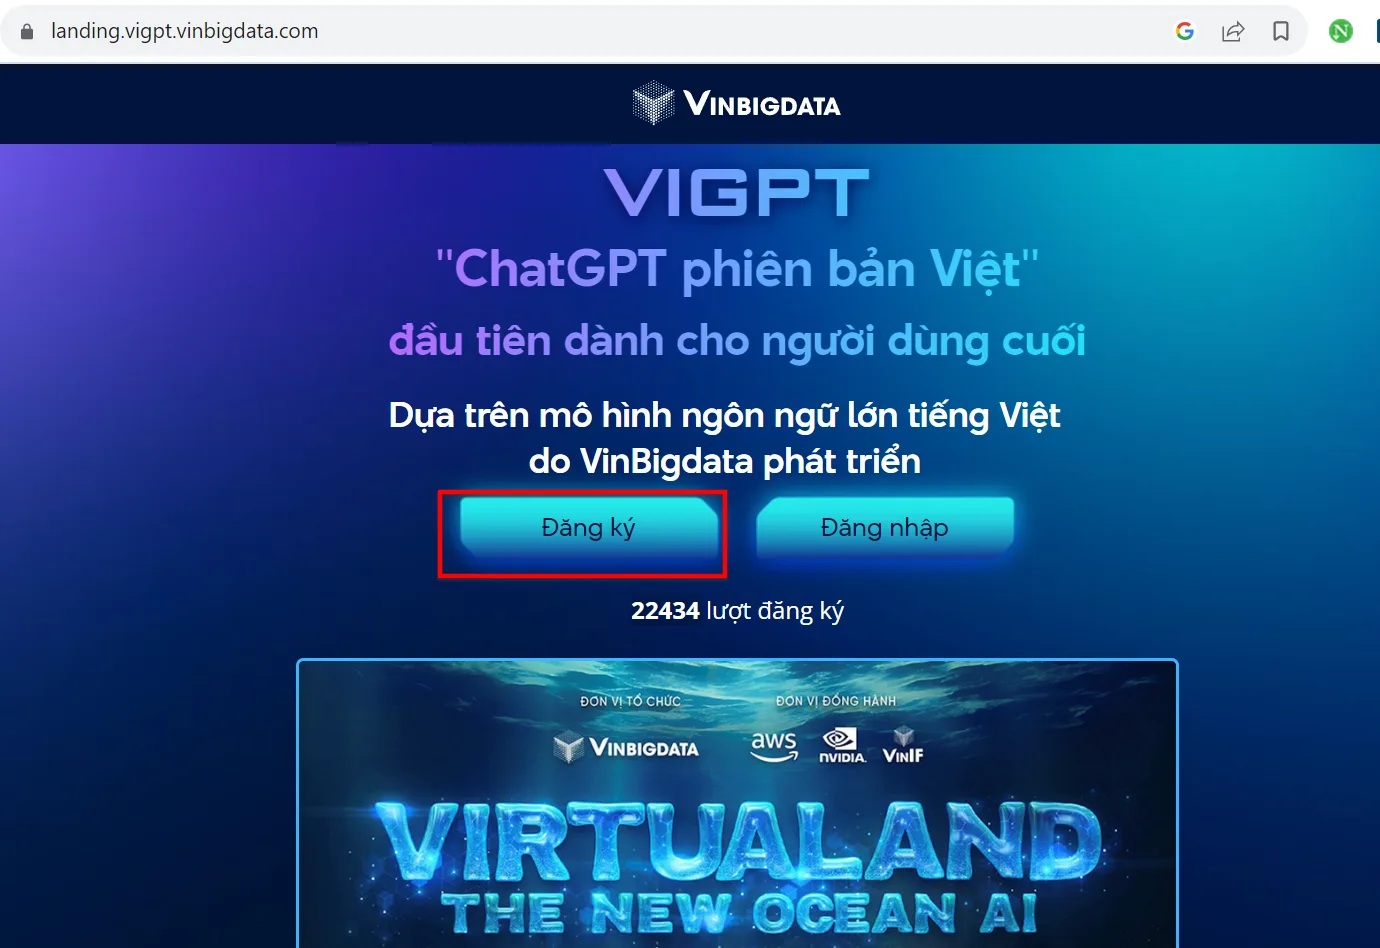 Bạn Nhấn Vào Nút Đăng Ký để đăng Ký ViGPT   Chat GPT Phiên Bản Việt Nam